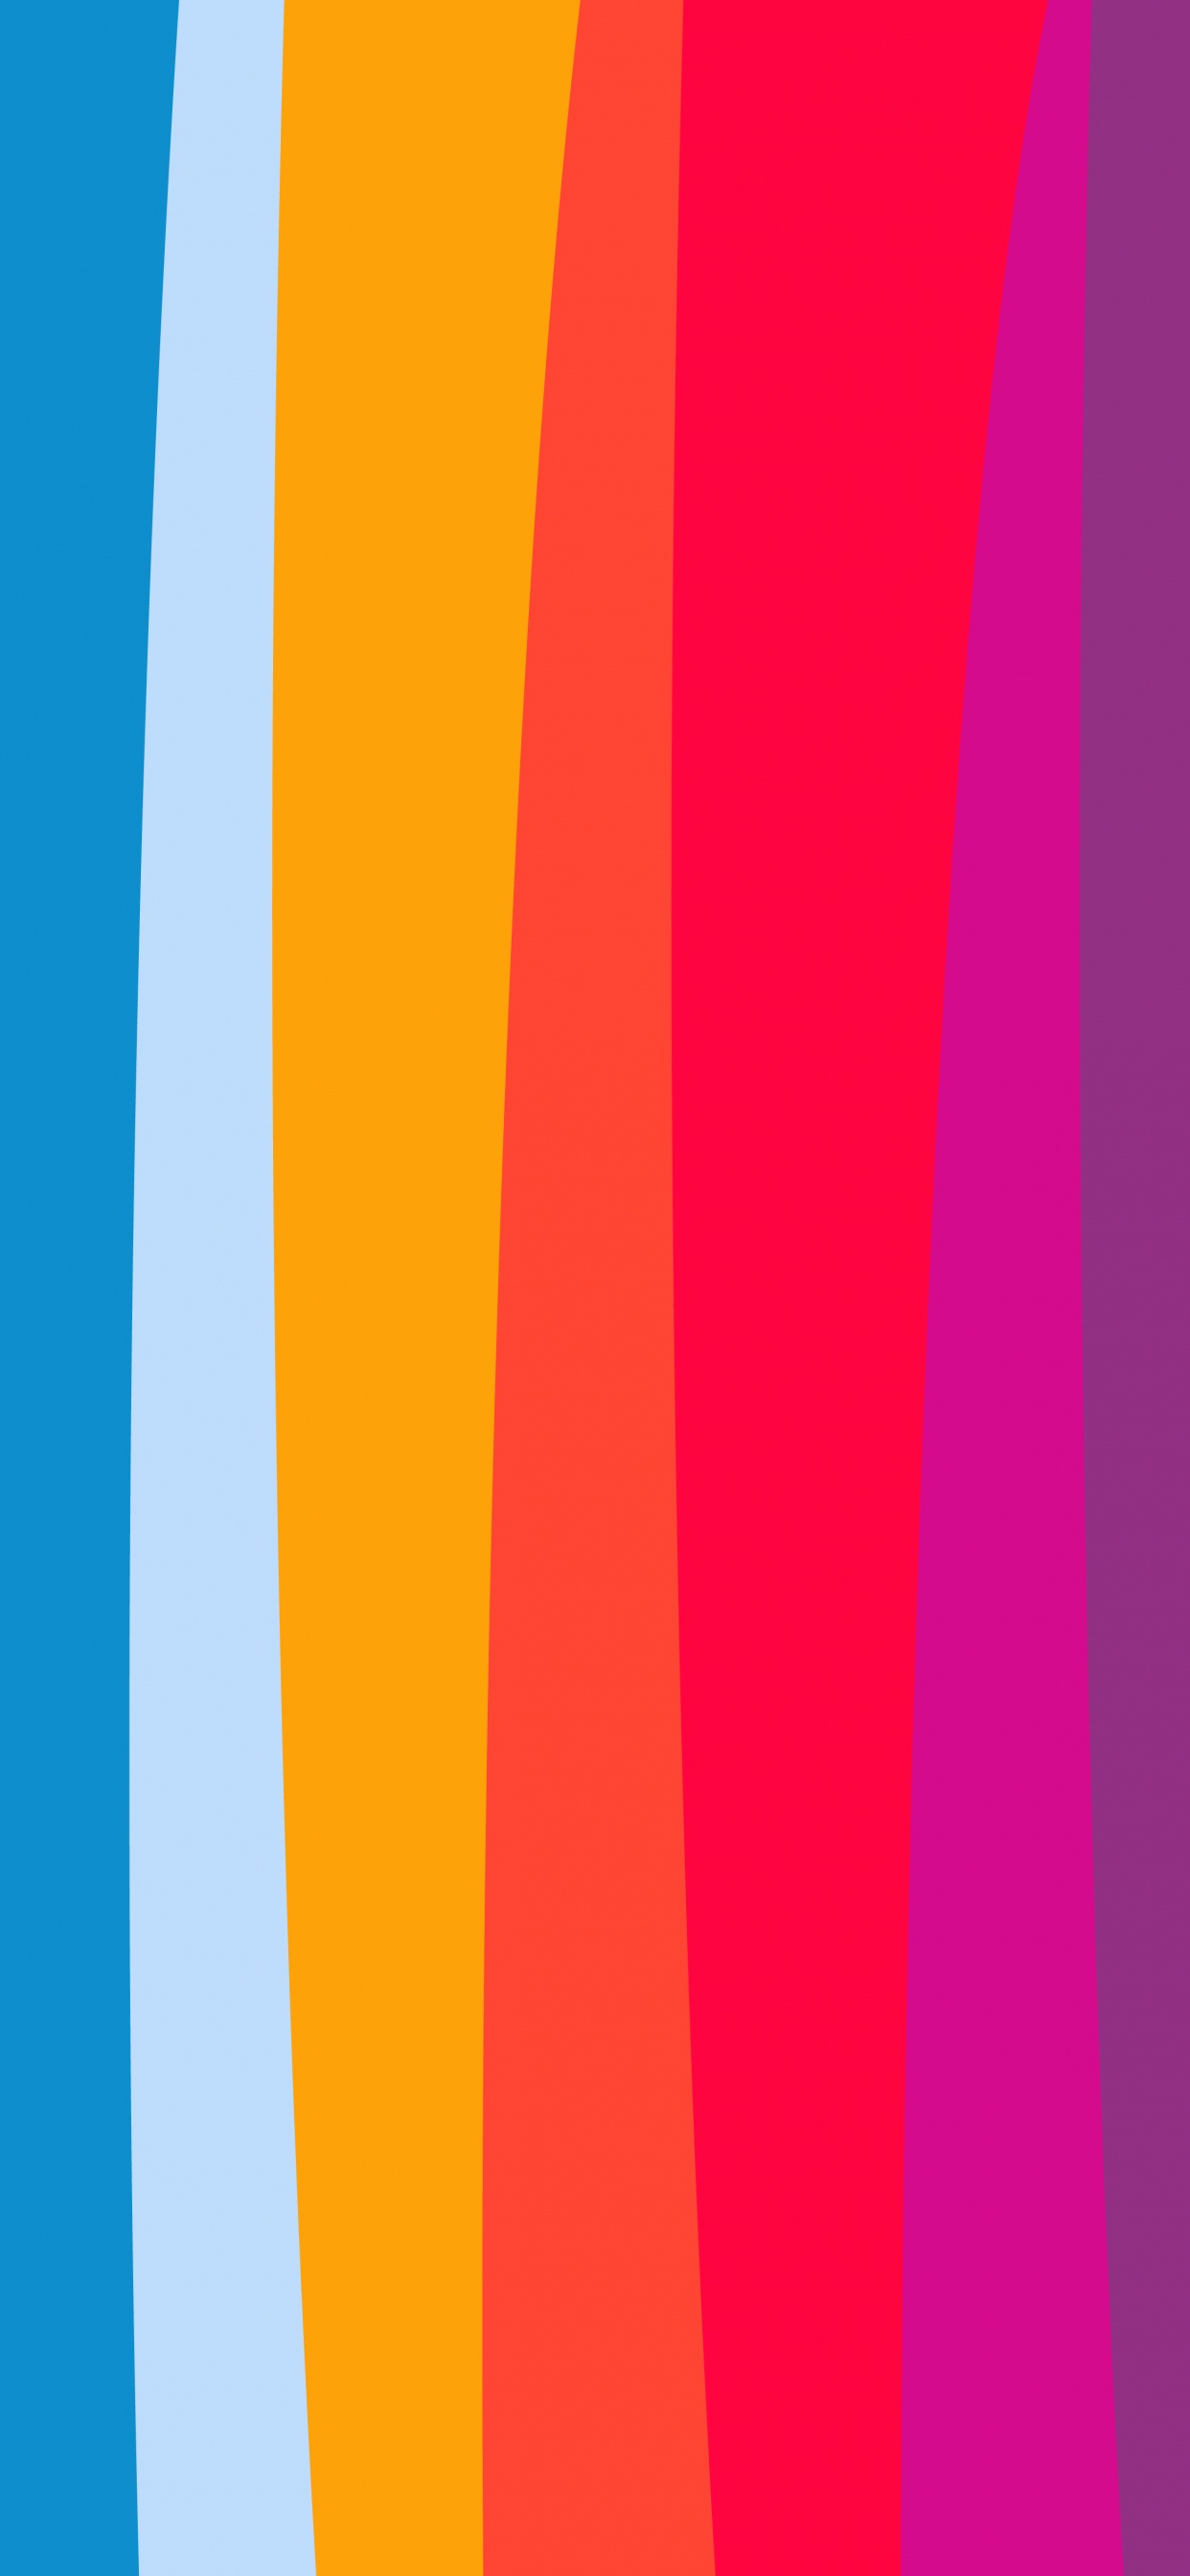 Orange, Apple, la Pureté de la Couleur, Blue, Purple. Wallpaper in 1242x2688 Resolution